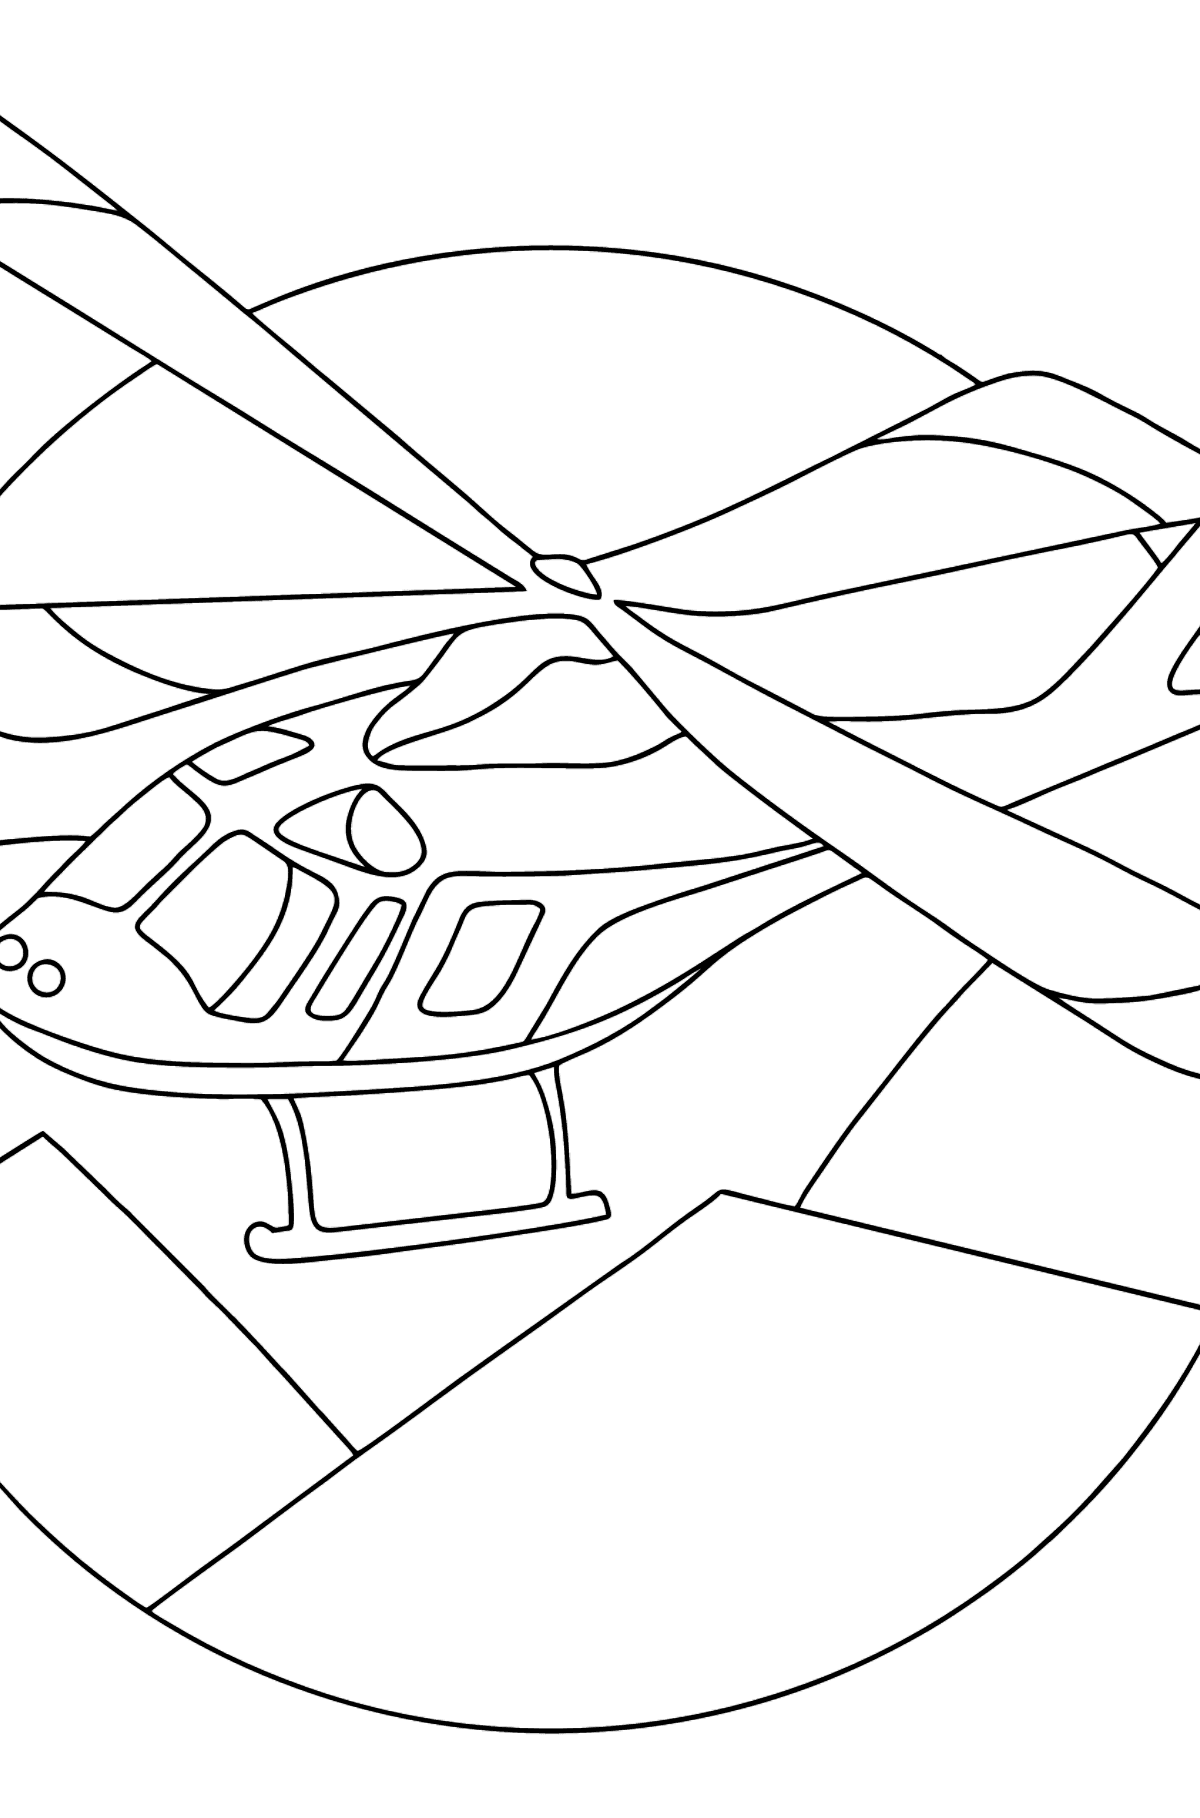 Tegning til fargelegging sportshelikopter - Tegninger til fargelegging for barn